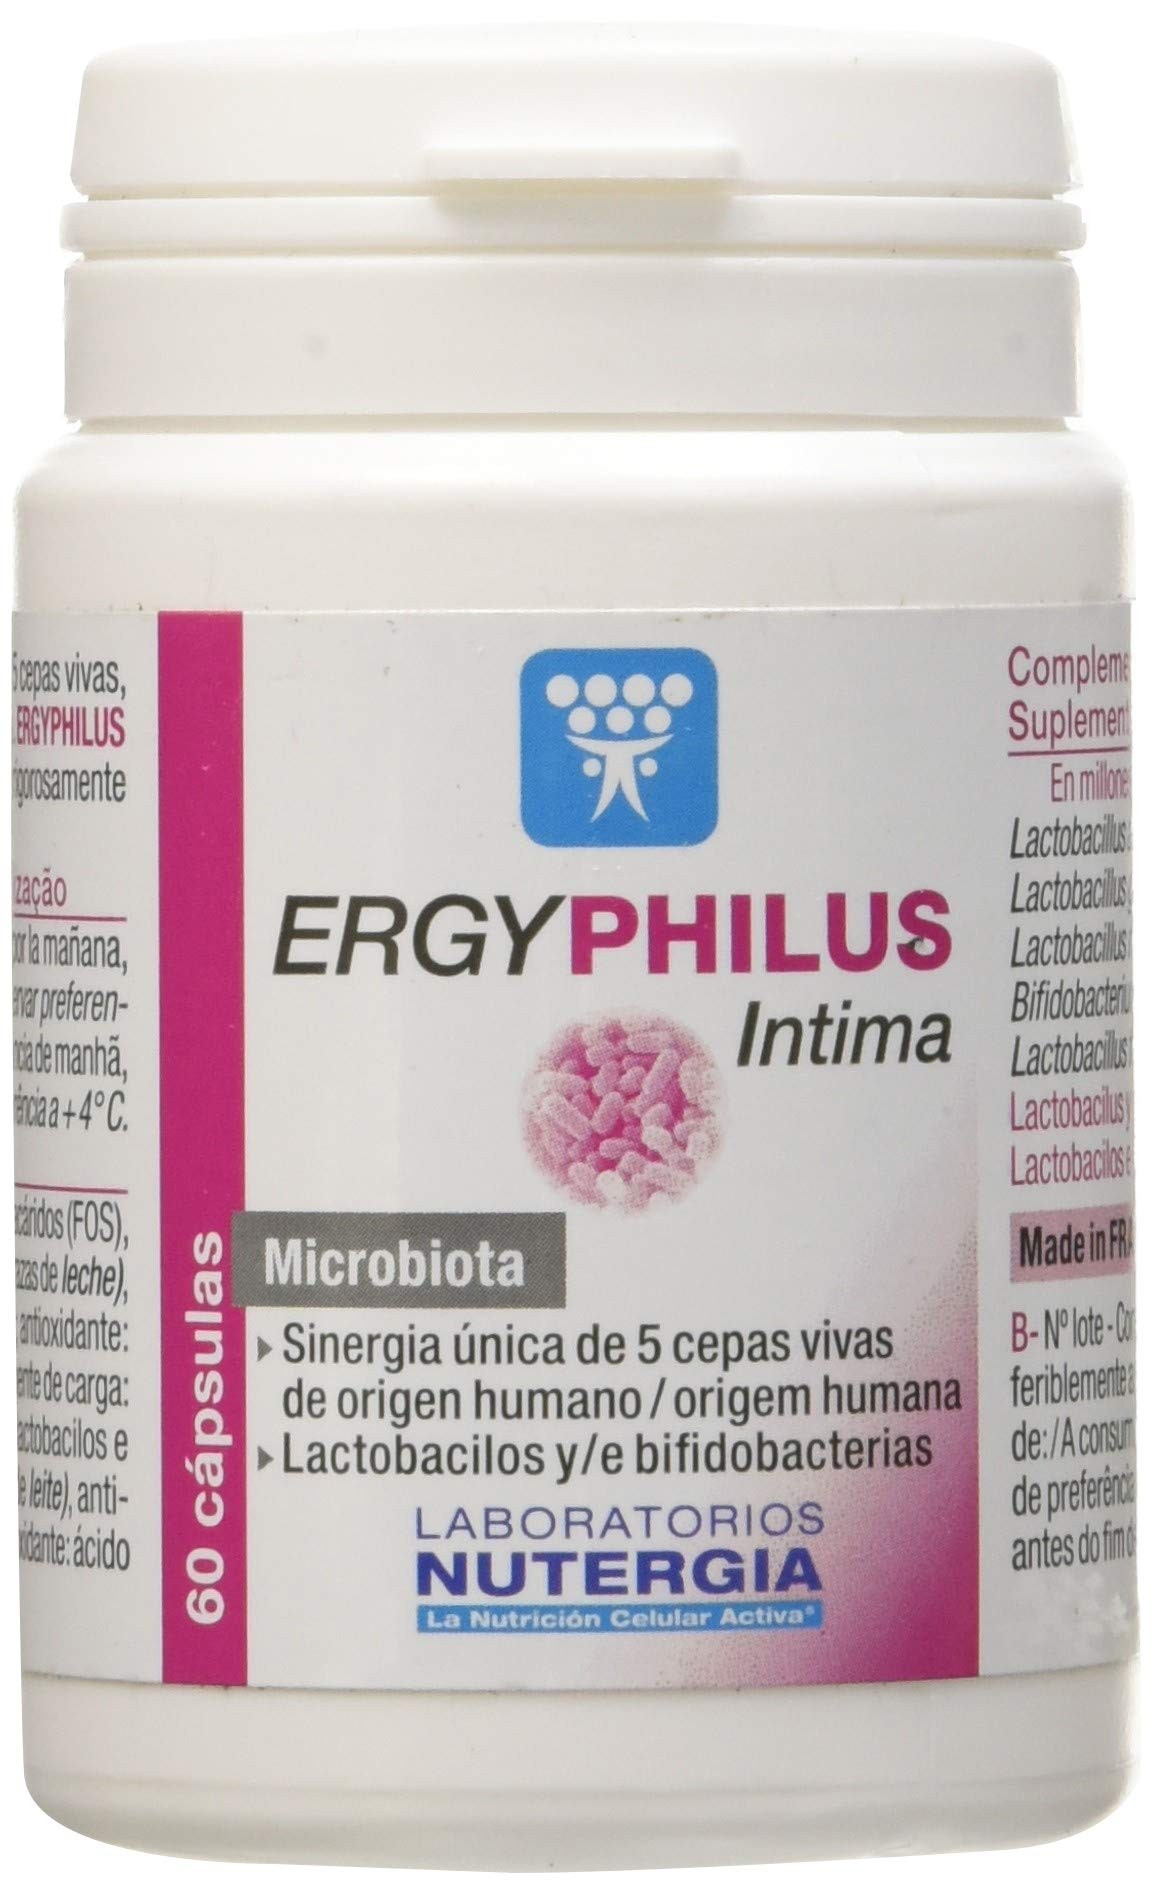 ERGYPHILUS INTIMA 60cap (NUTERGIA) Con lactobacillus para el normal  mantenimiento de las microbiotas vaginal y urinaria